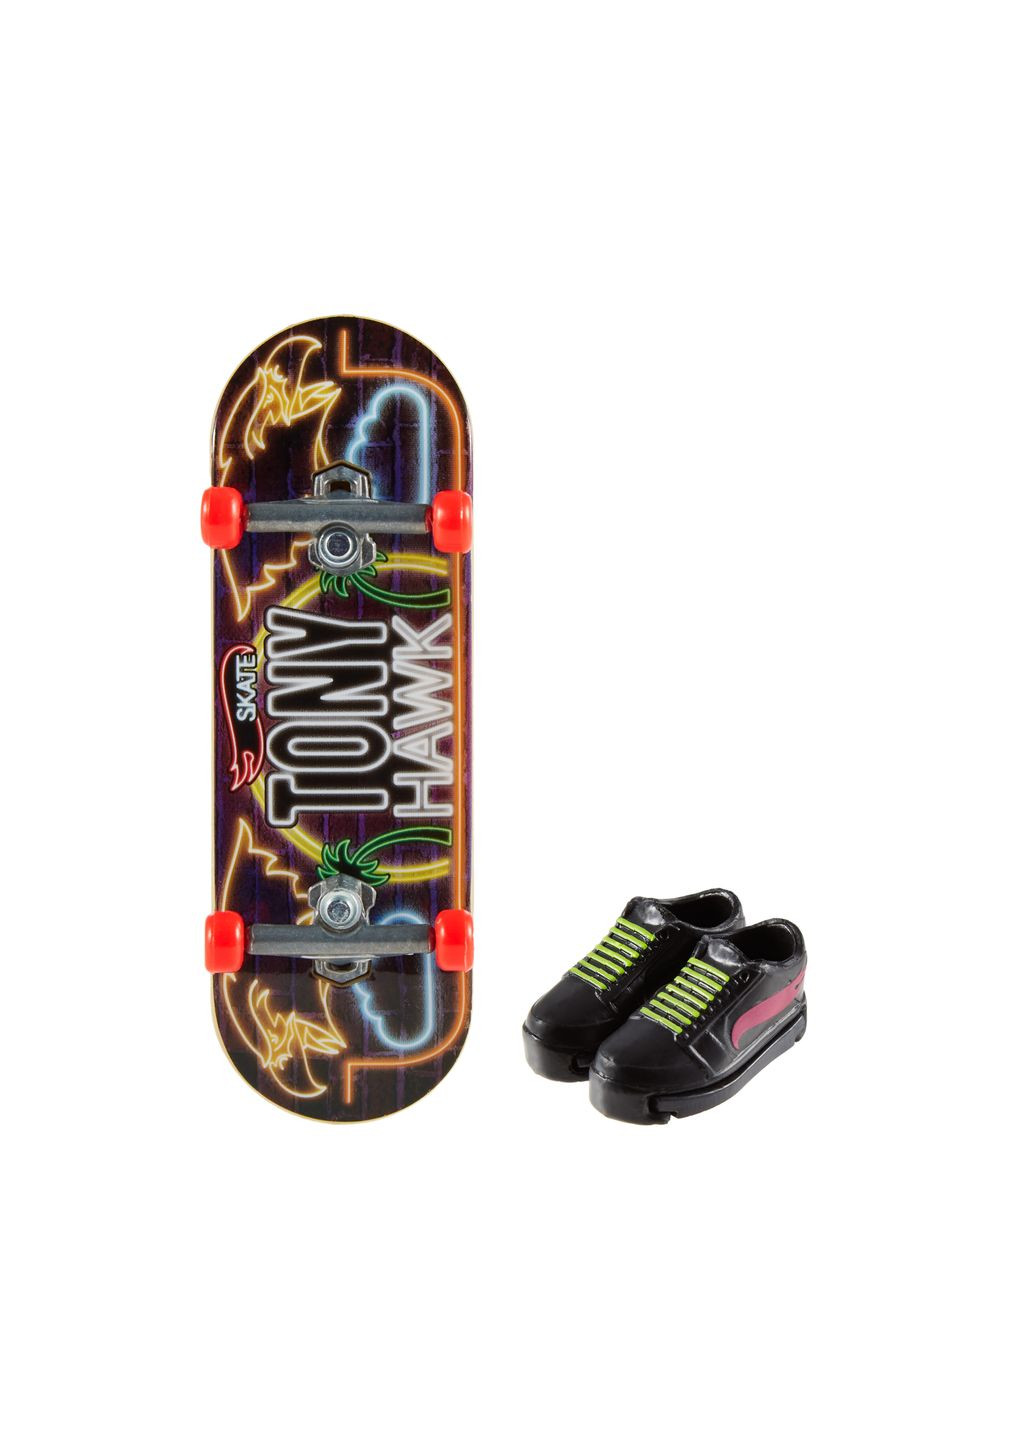 Скейт и обувь для пальчиков, в ассортименте (HGT46) Hot Wheels (293483819)